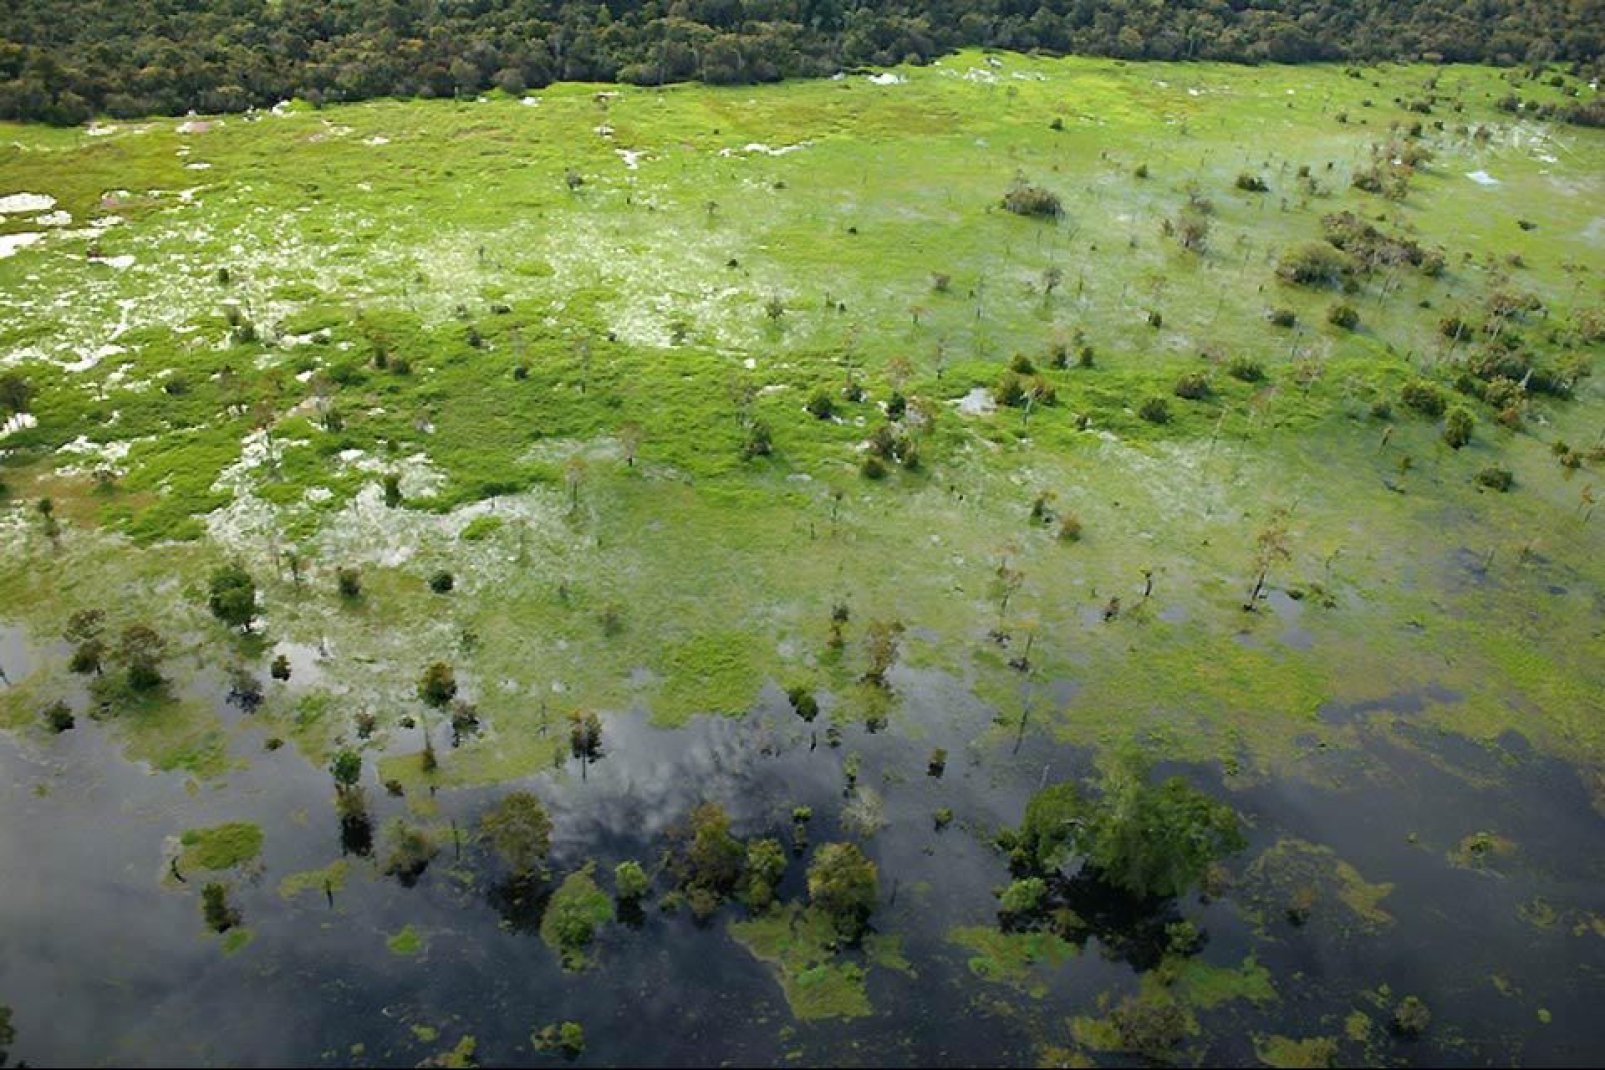 Manaus apparaît petite, au cœur de cet océan végétal.